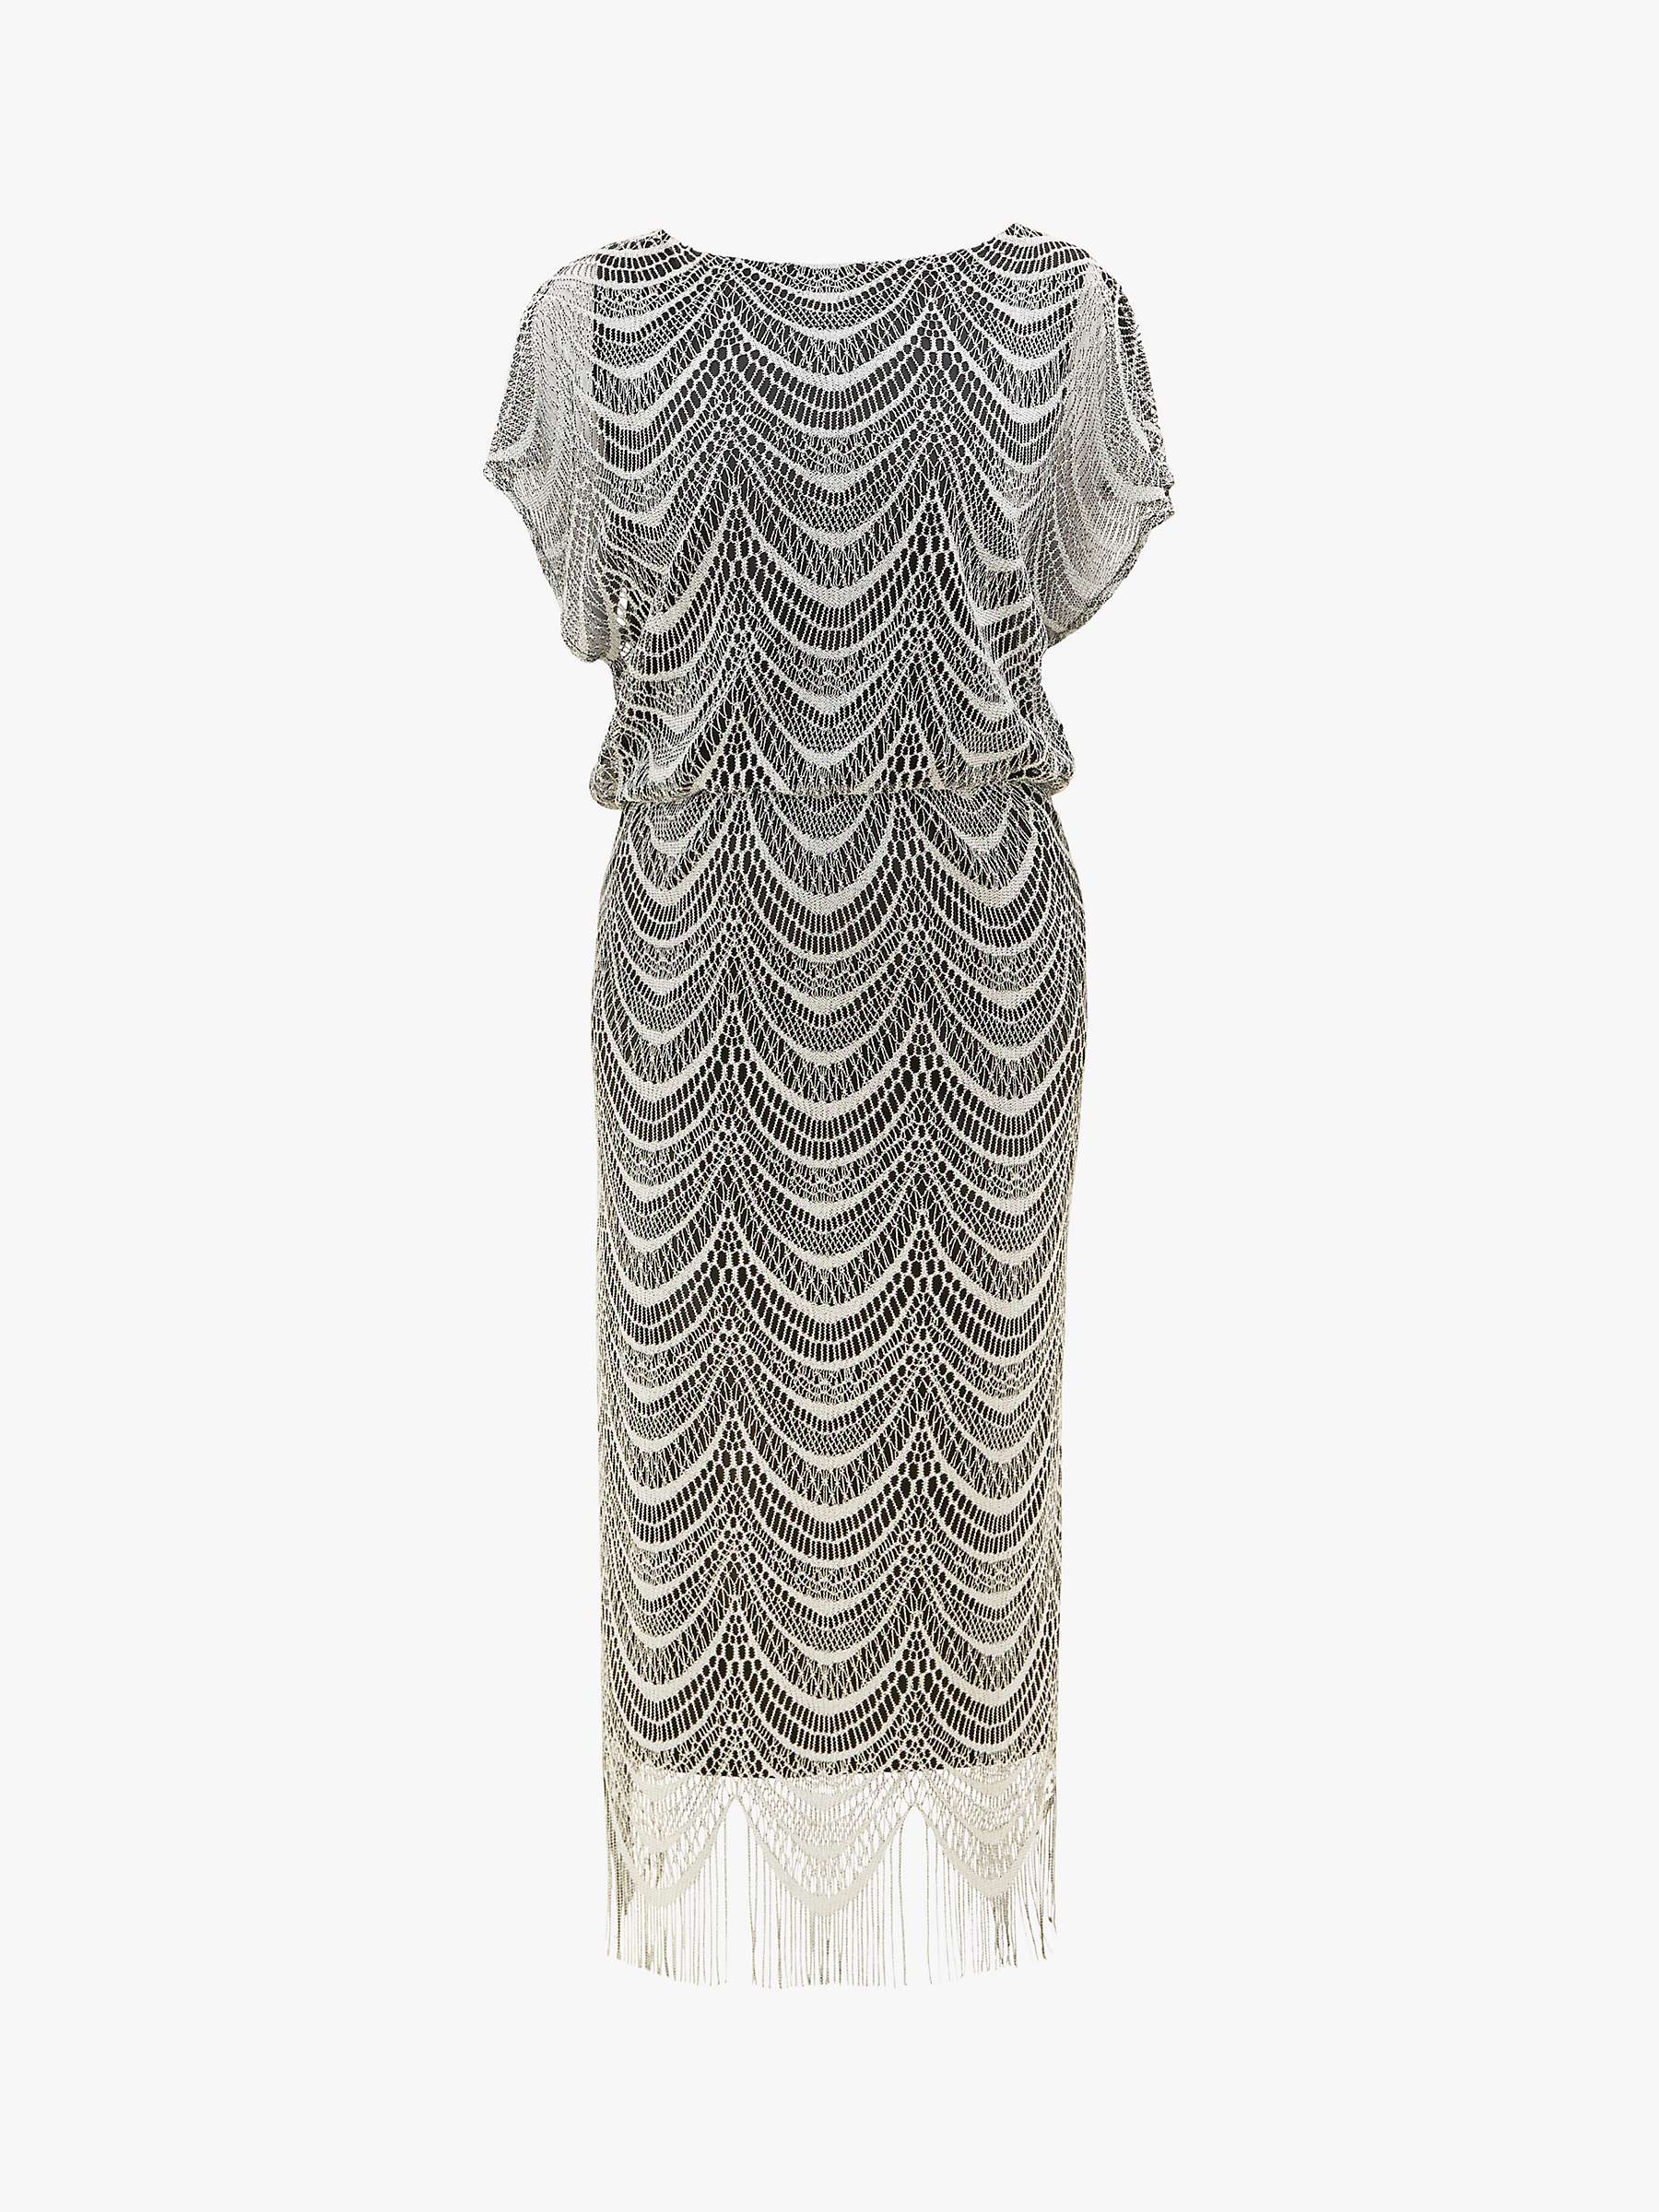 Buy Gina Bacconi Arleen Blouson Metallic Maxi Dress, Silver Online at johnlewis.com